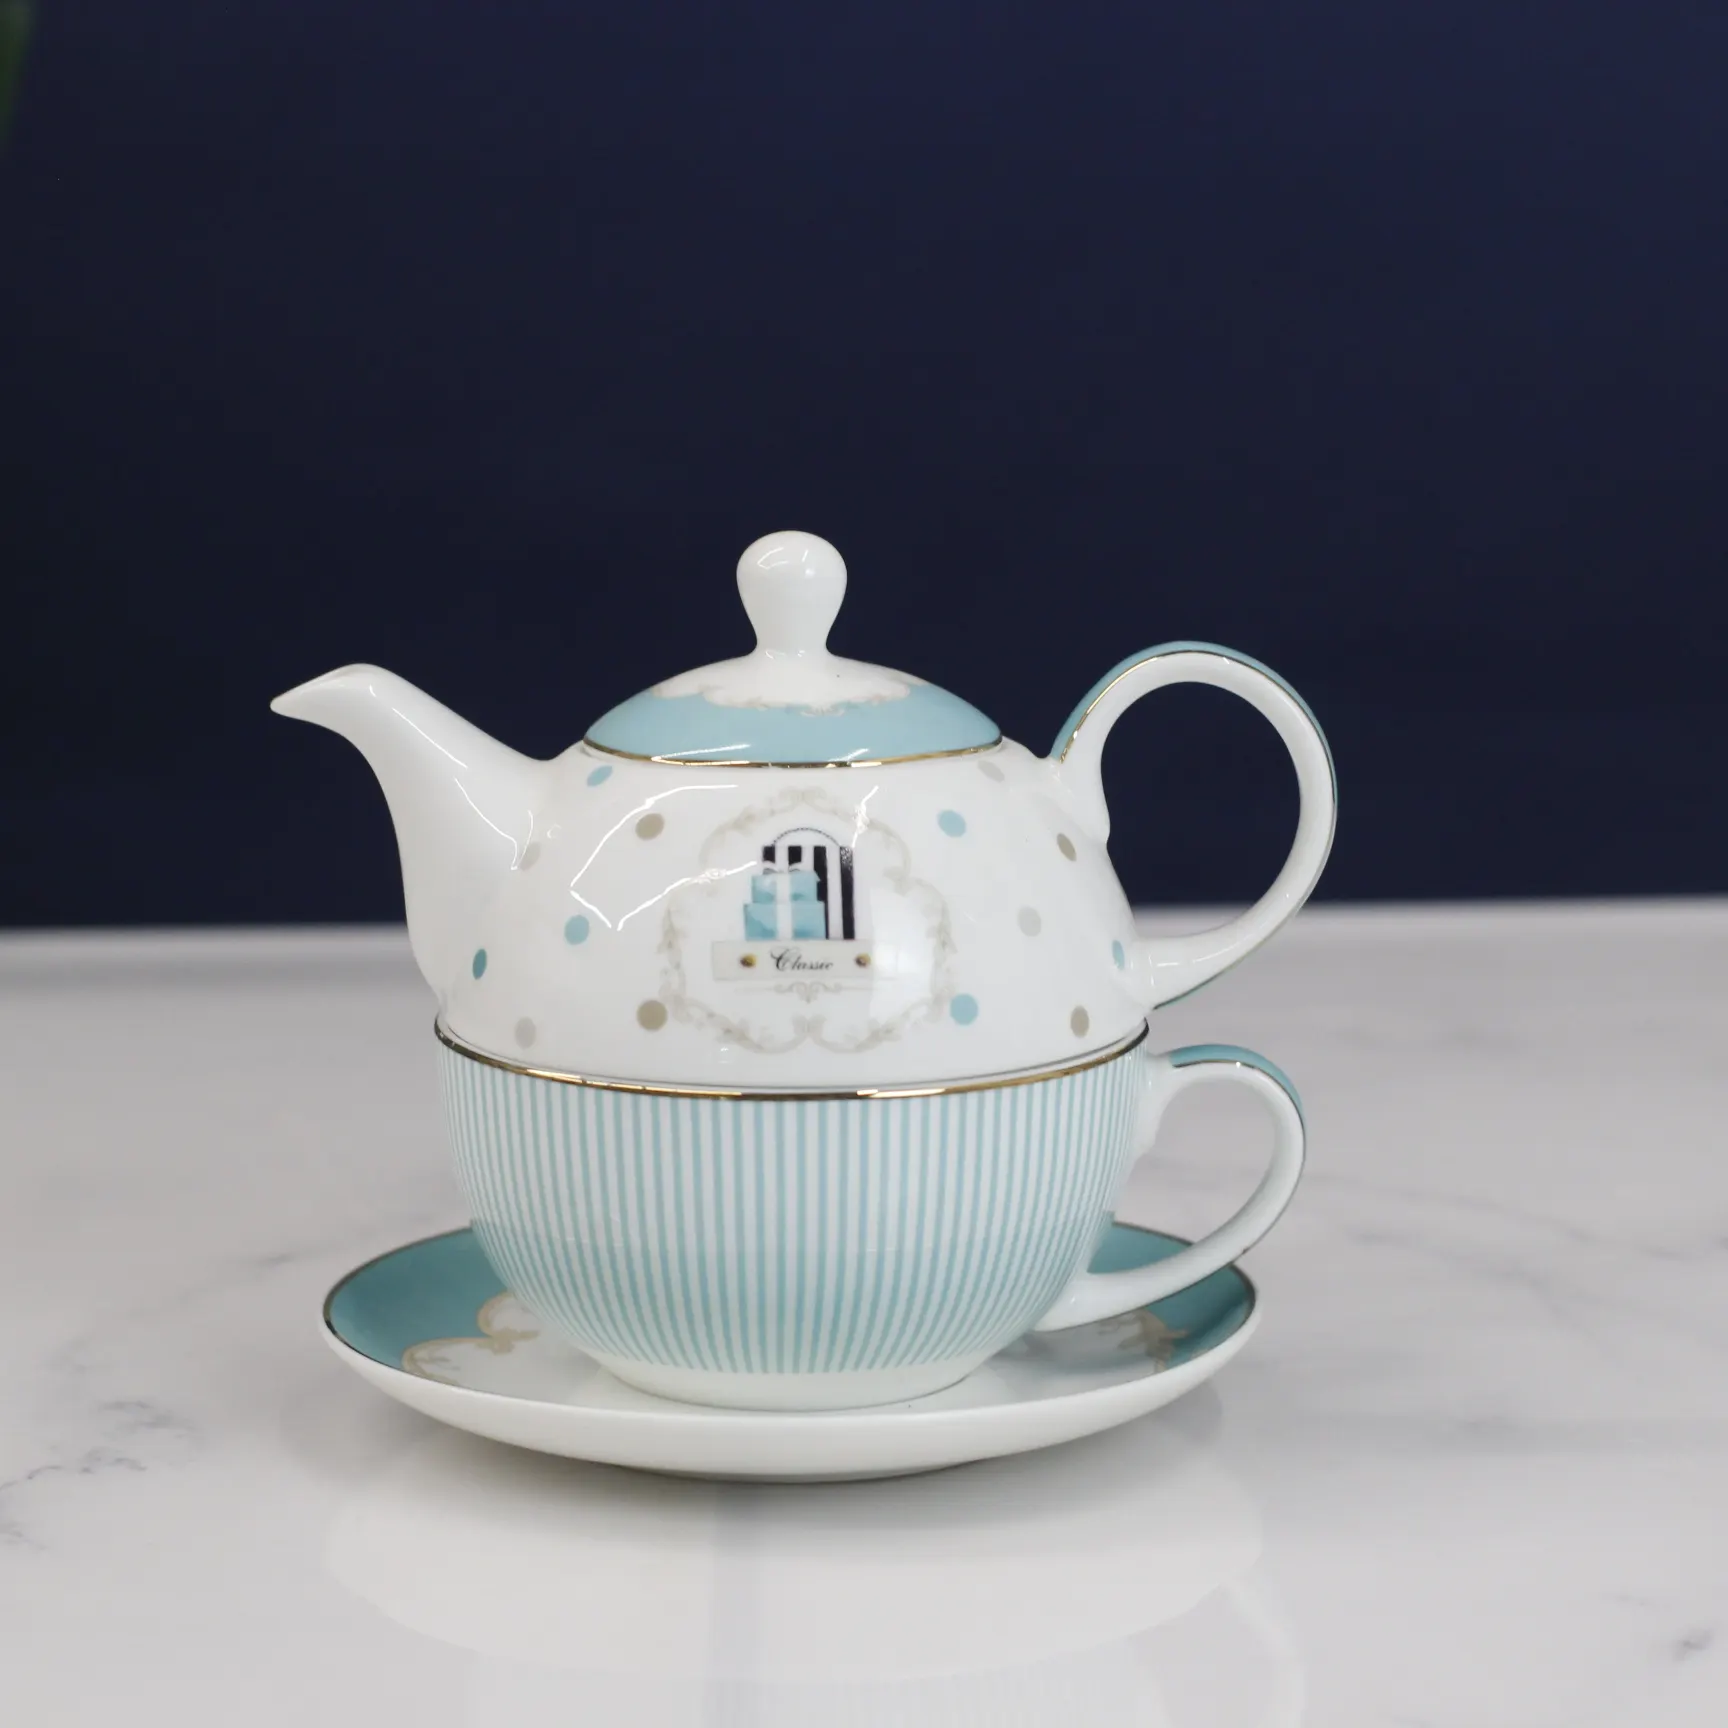 Heißer Verkauf Tee für eine Teekanne mit Untertasse neues Knochen porzellan Teese rvice Keramik Großhandel für Tee